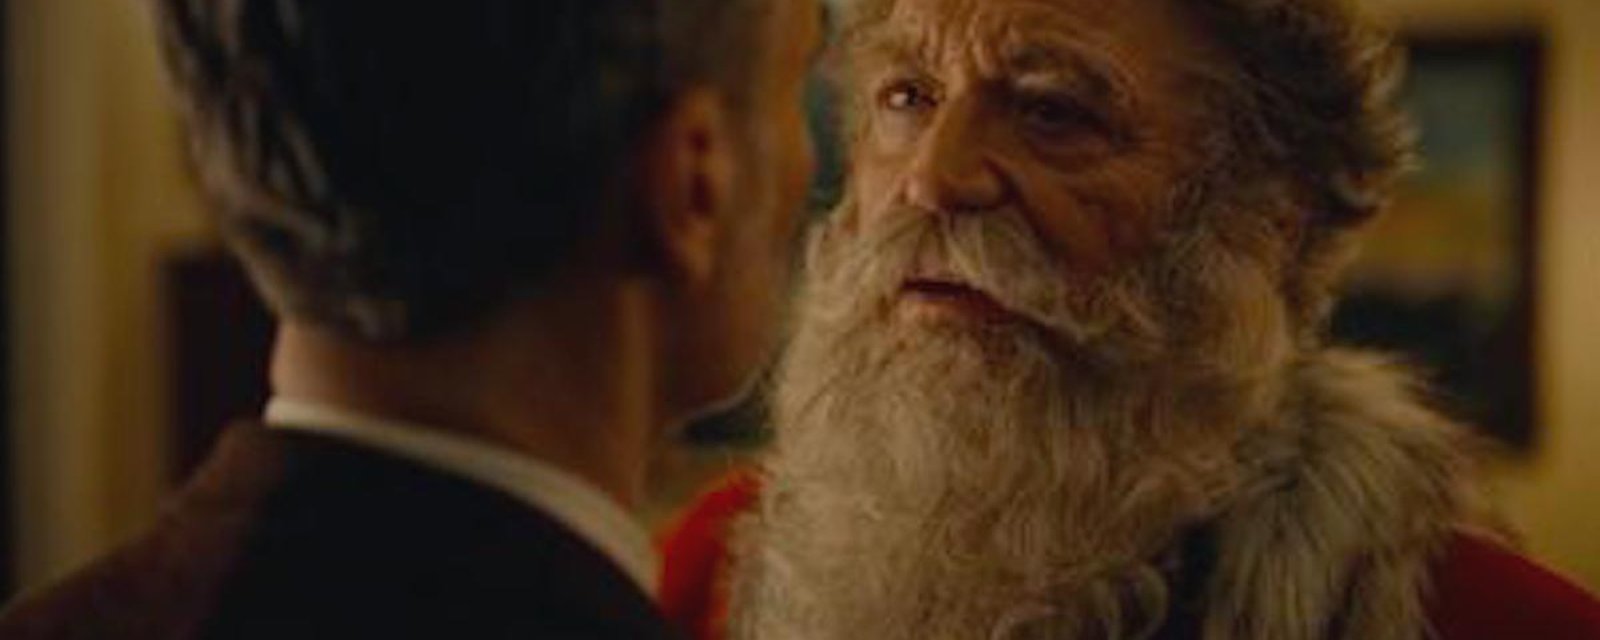 Un Père Noël gay dans une pub de fin d’année